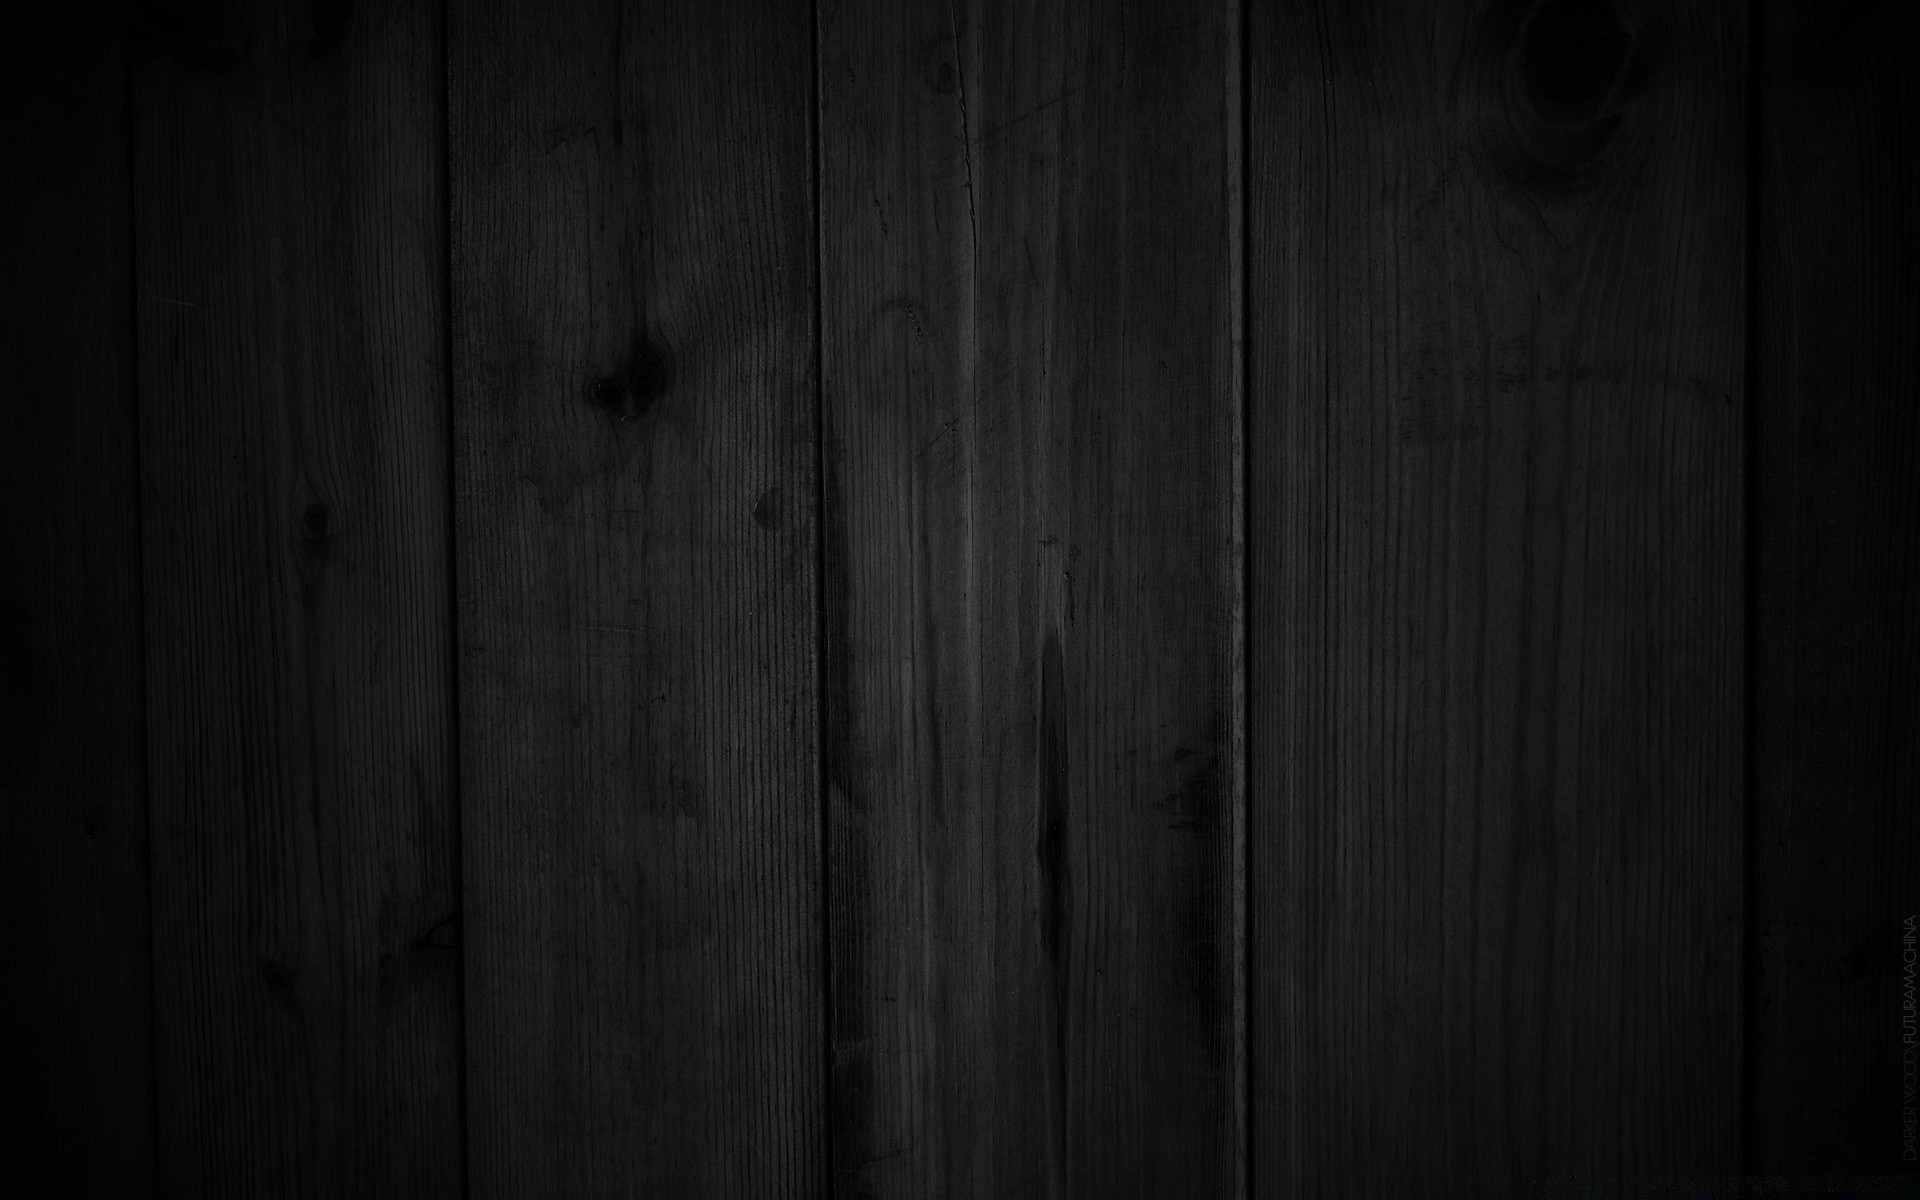 черное древесины темный доска старый ретро текстура рабочего стола деревянный журнал грязные стены грубо винтаж плотницкий панель зерна деревянные ткань рустик паркетный